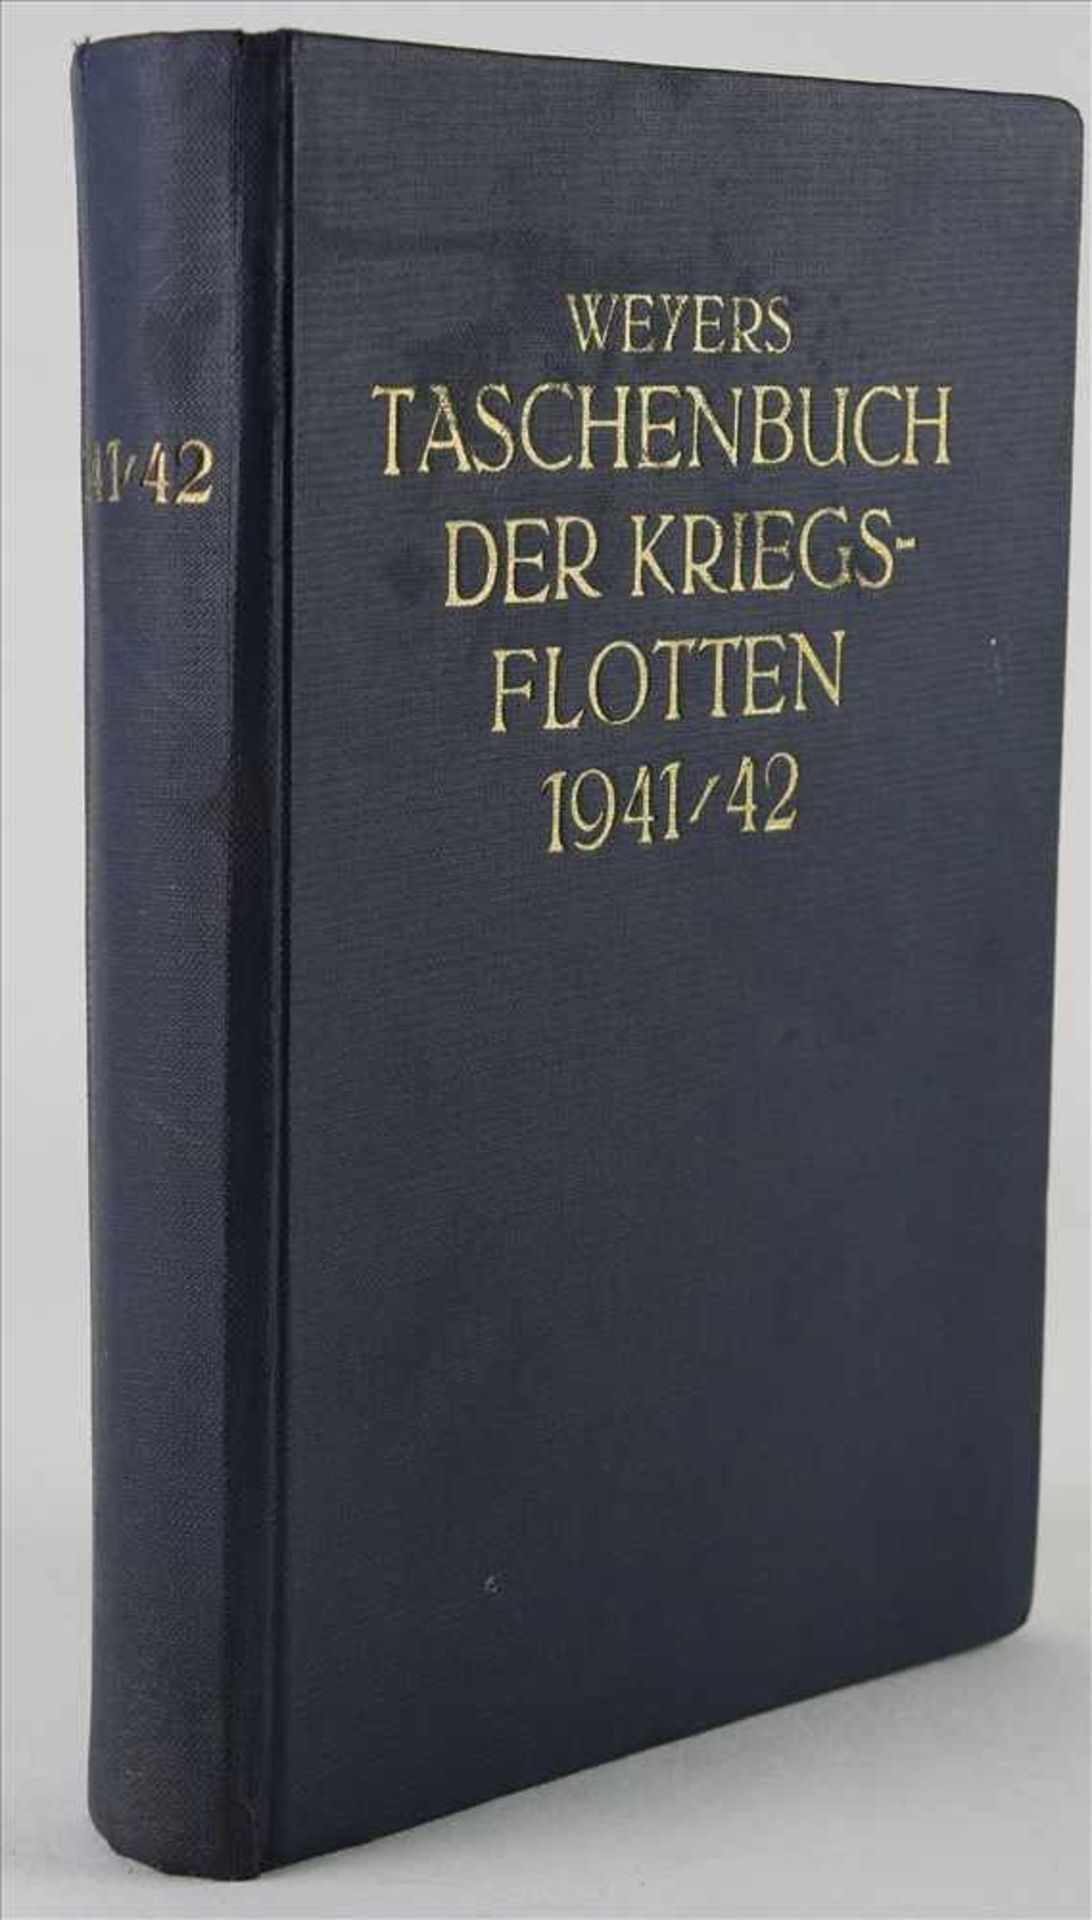 Weyers Taschenbuchder Kriegsflotten 1941/42. 482 Seiten mit zahlreichen Abbildungen und Grafiken,